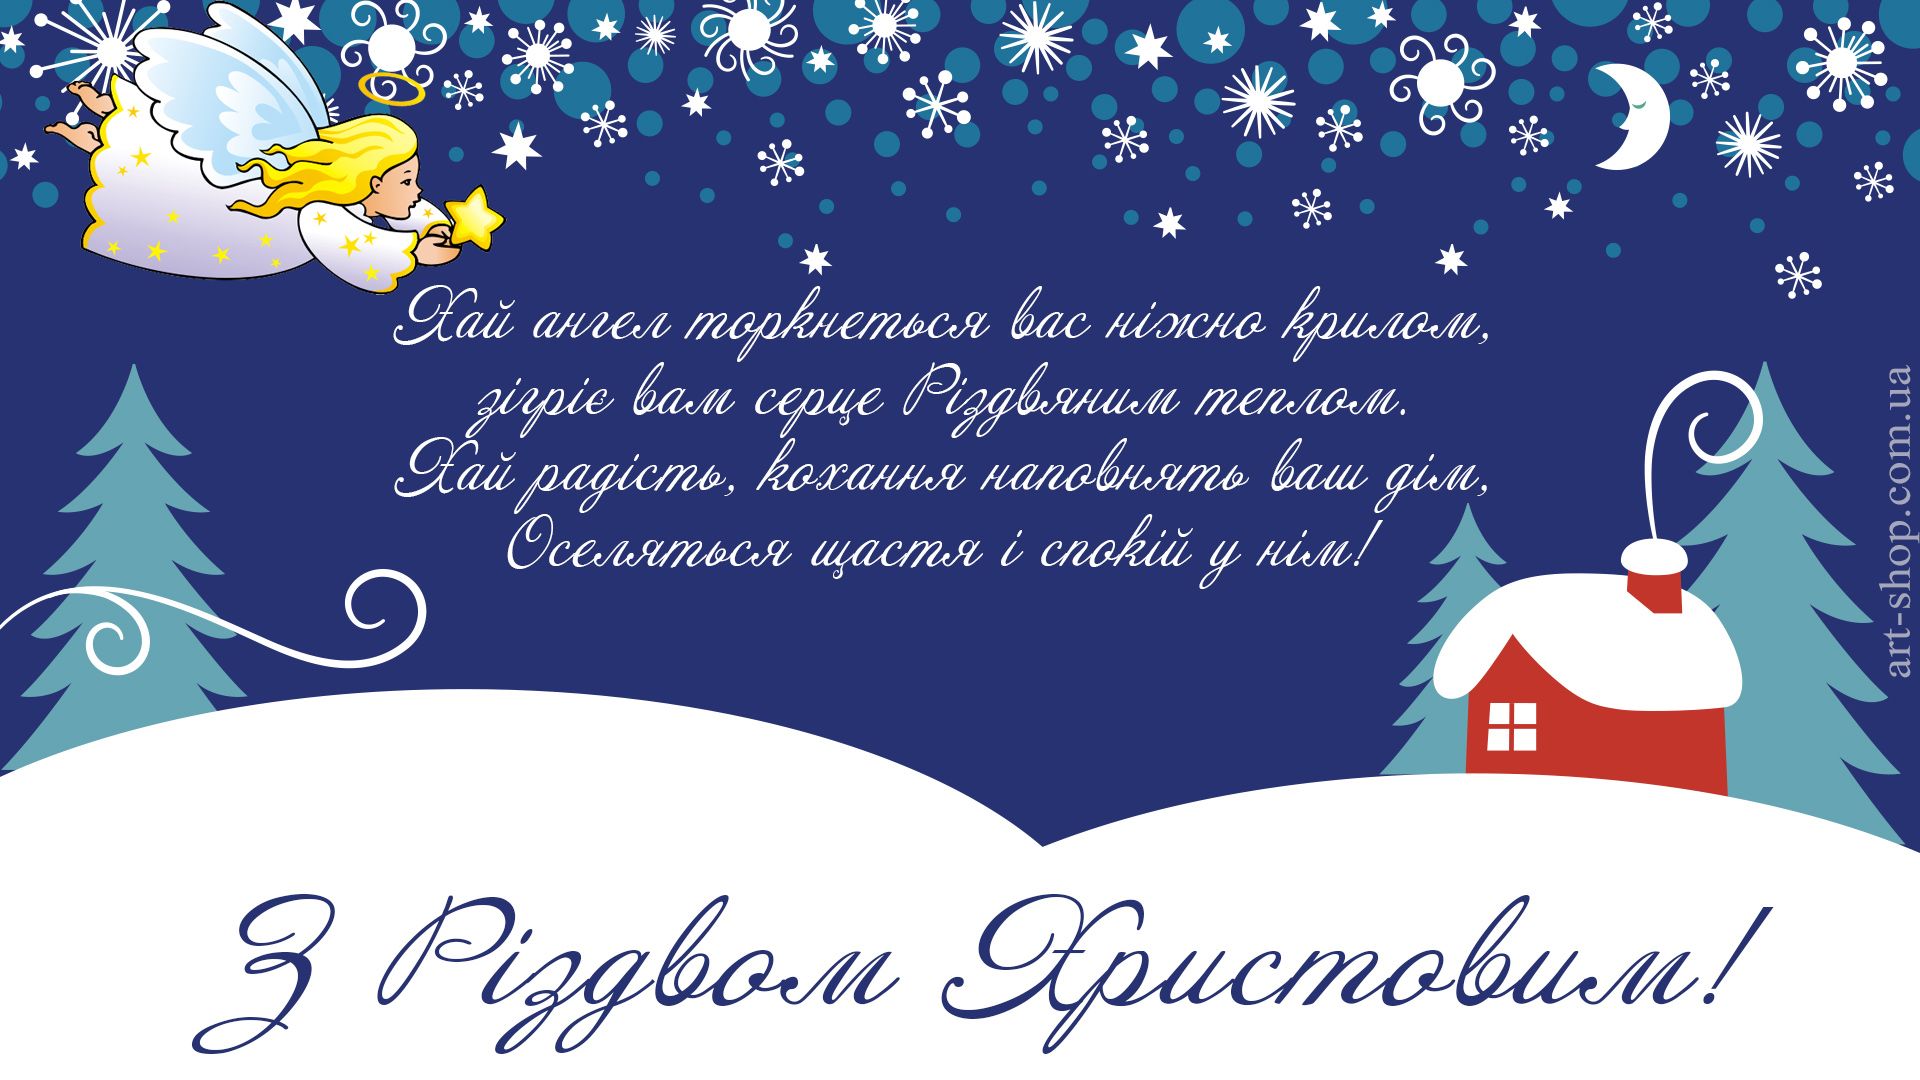 Поздравления С Рождеством Христовым На Украинском Языке